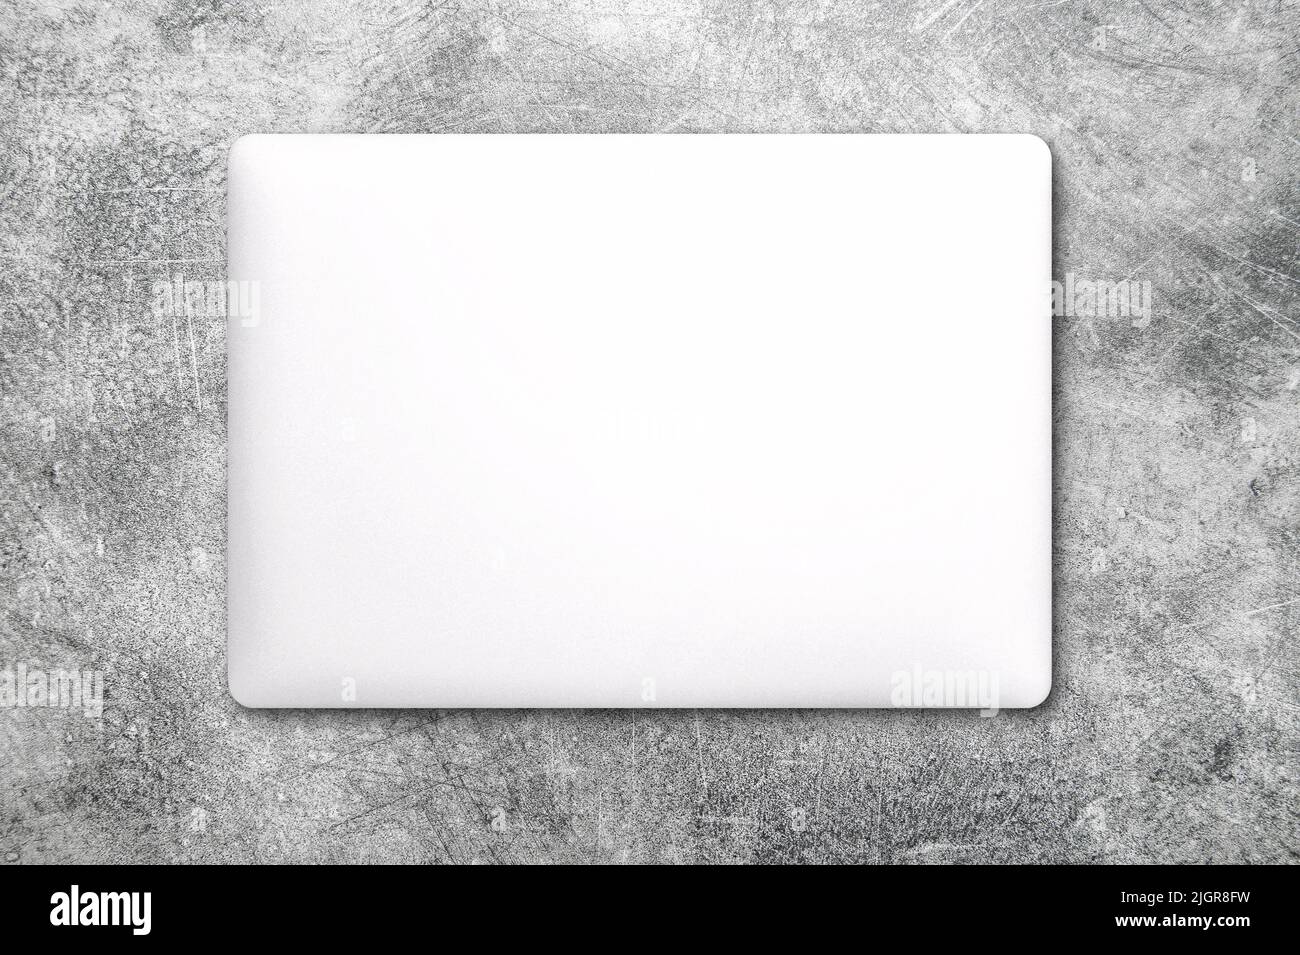 Maquette d'ordinateur portable sur fond de marbre. Plan de travail de bureau Banque D'Images